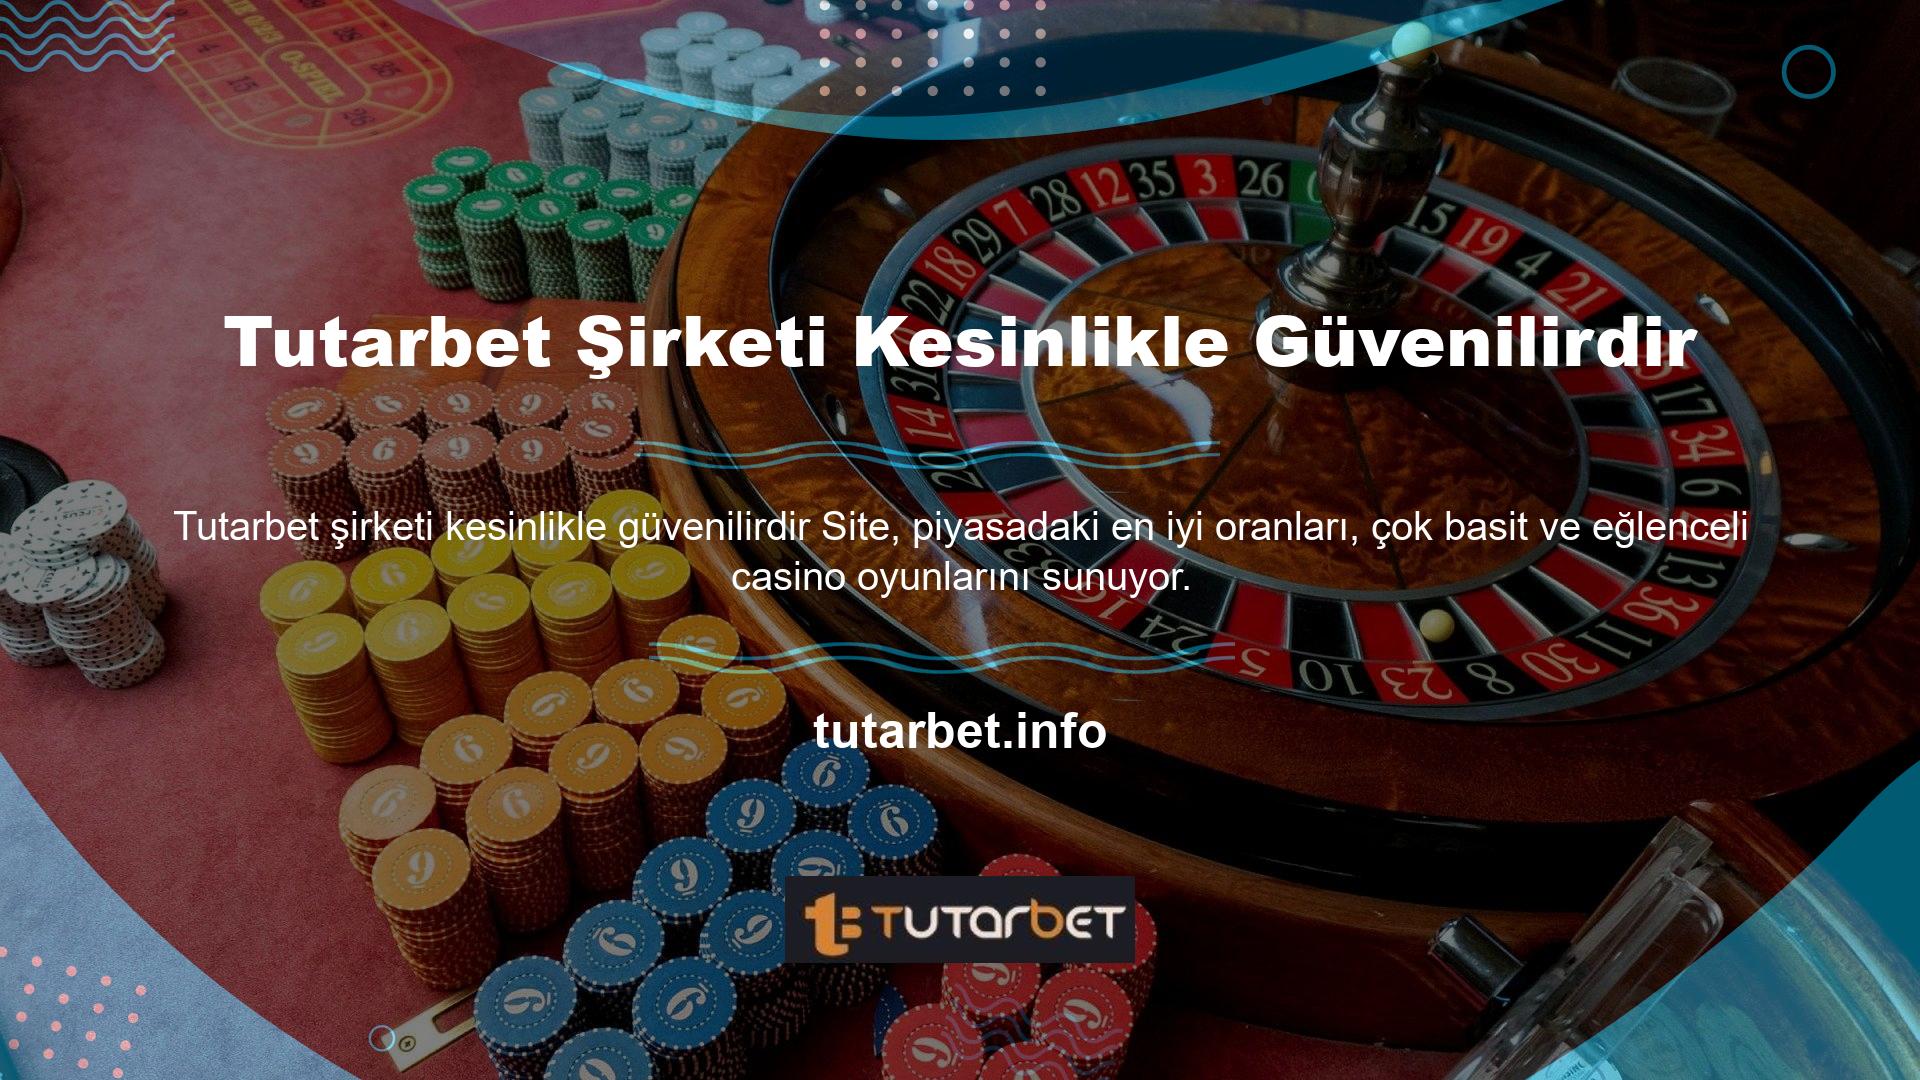 Ayrıca kullanıcılara canlı casino ve sanal bahis seçenekleri sunulmaktadır